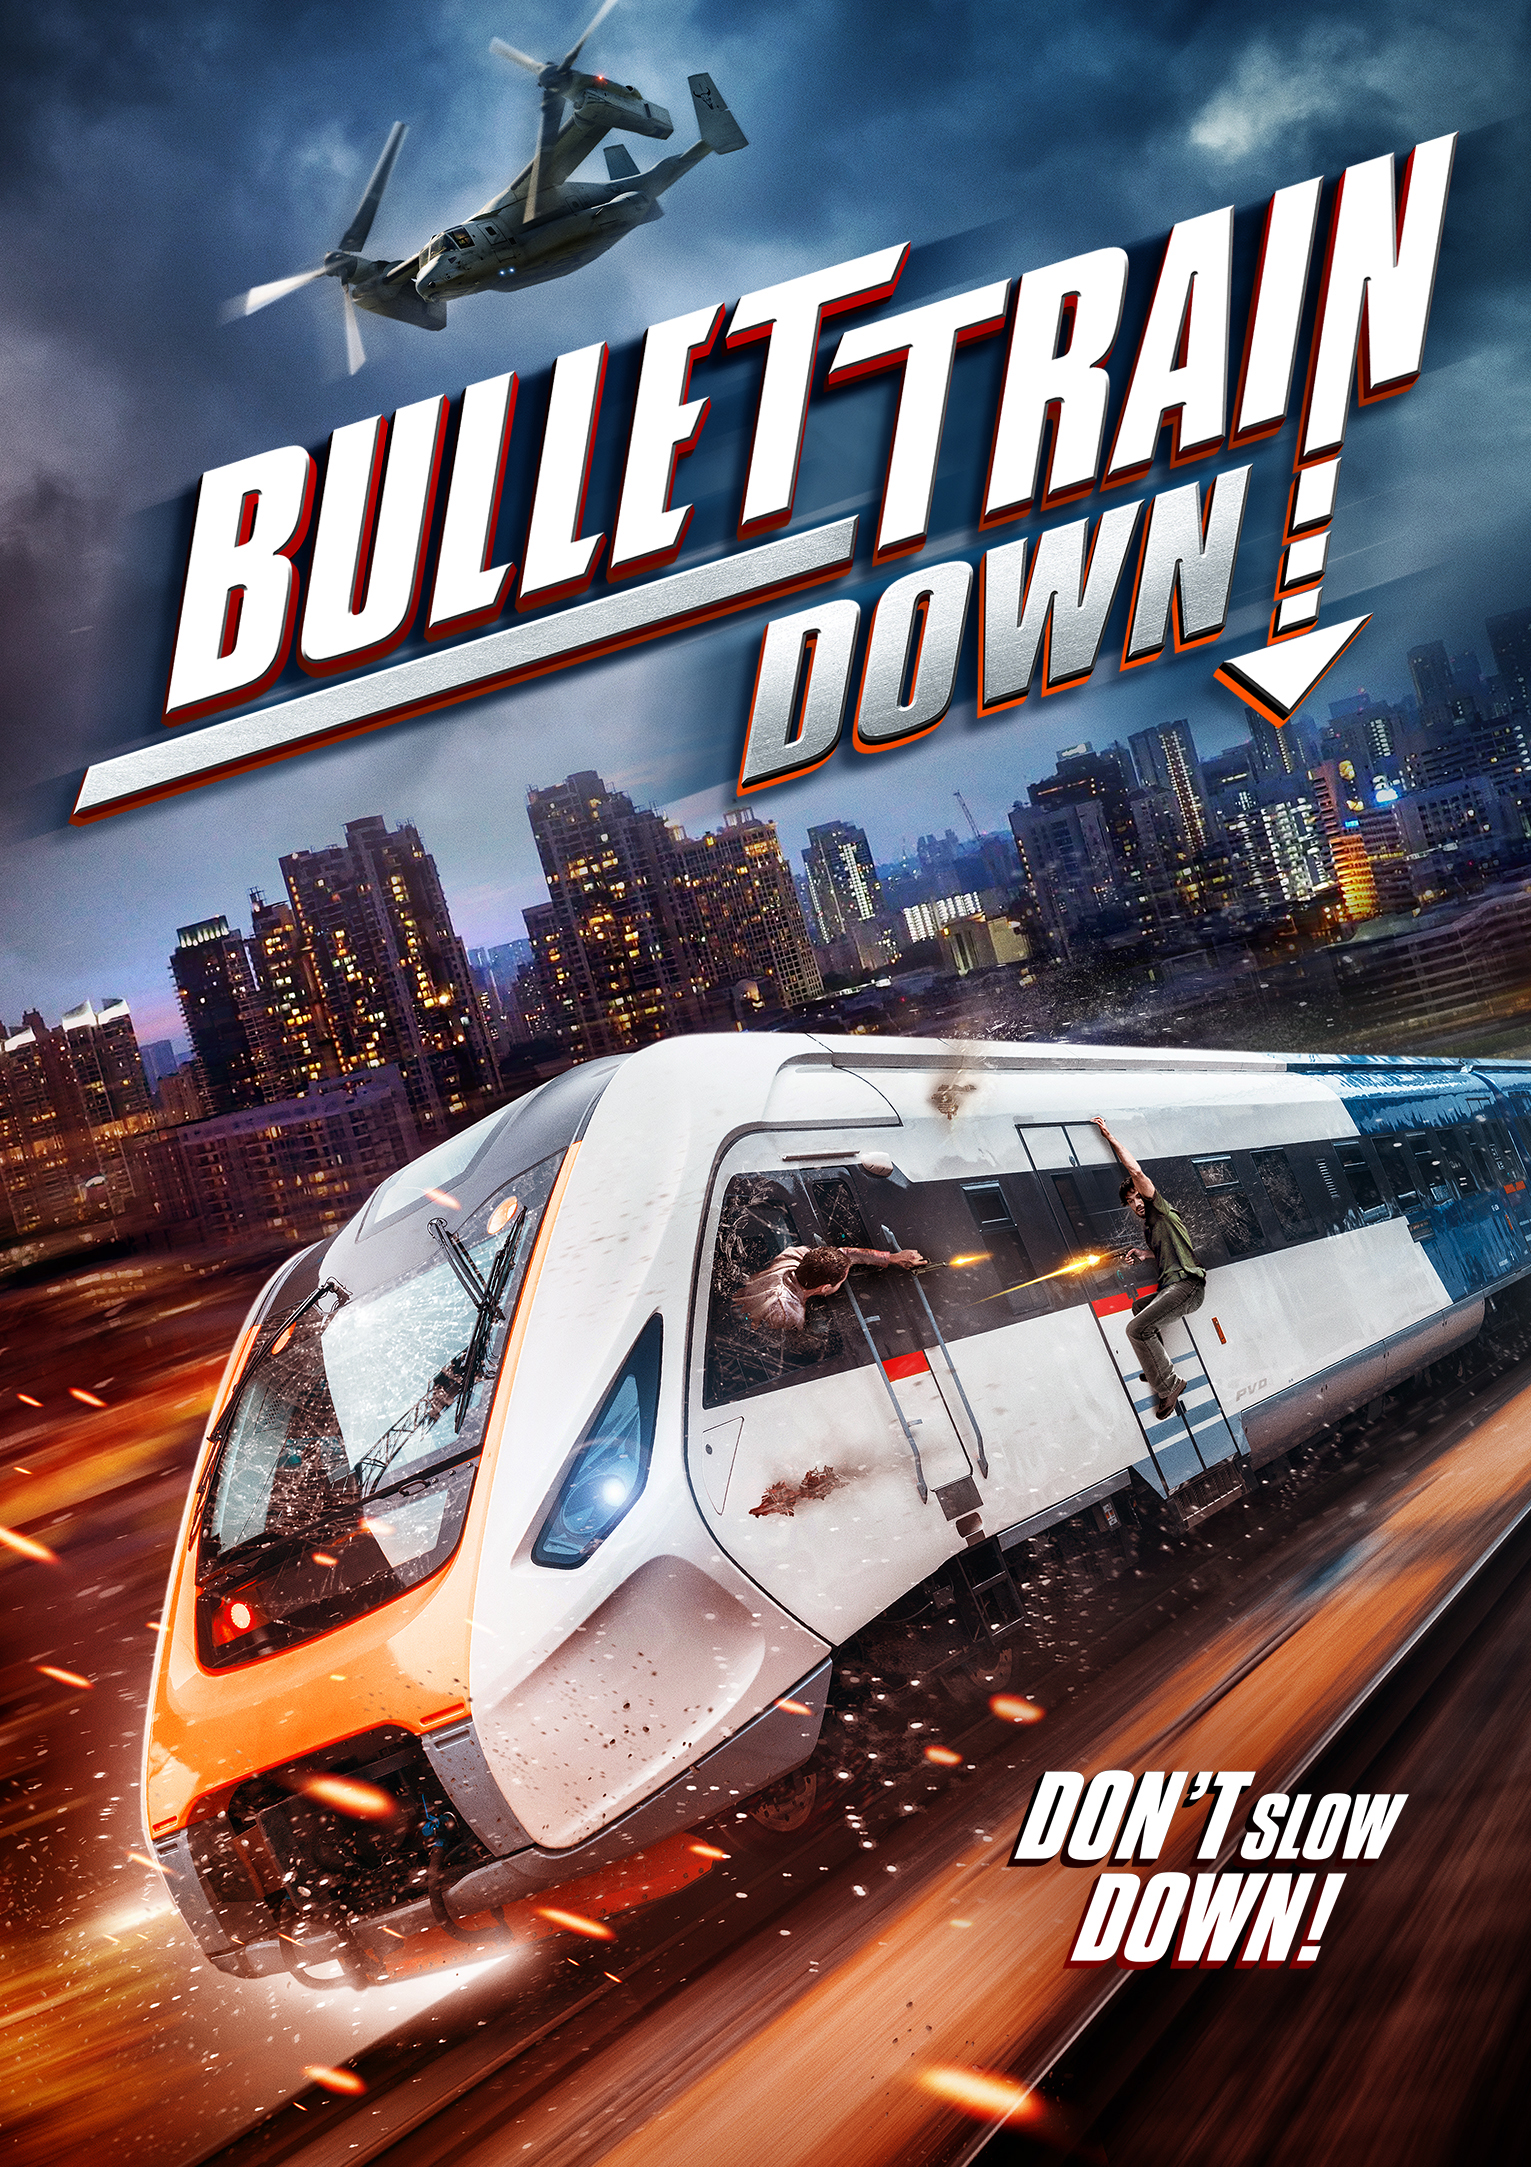 4K Ultra HD, Blu-ray, DVD Release: Bullet Train